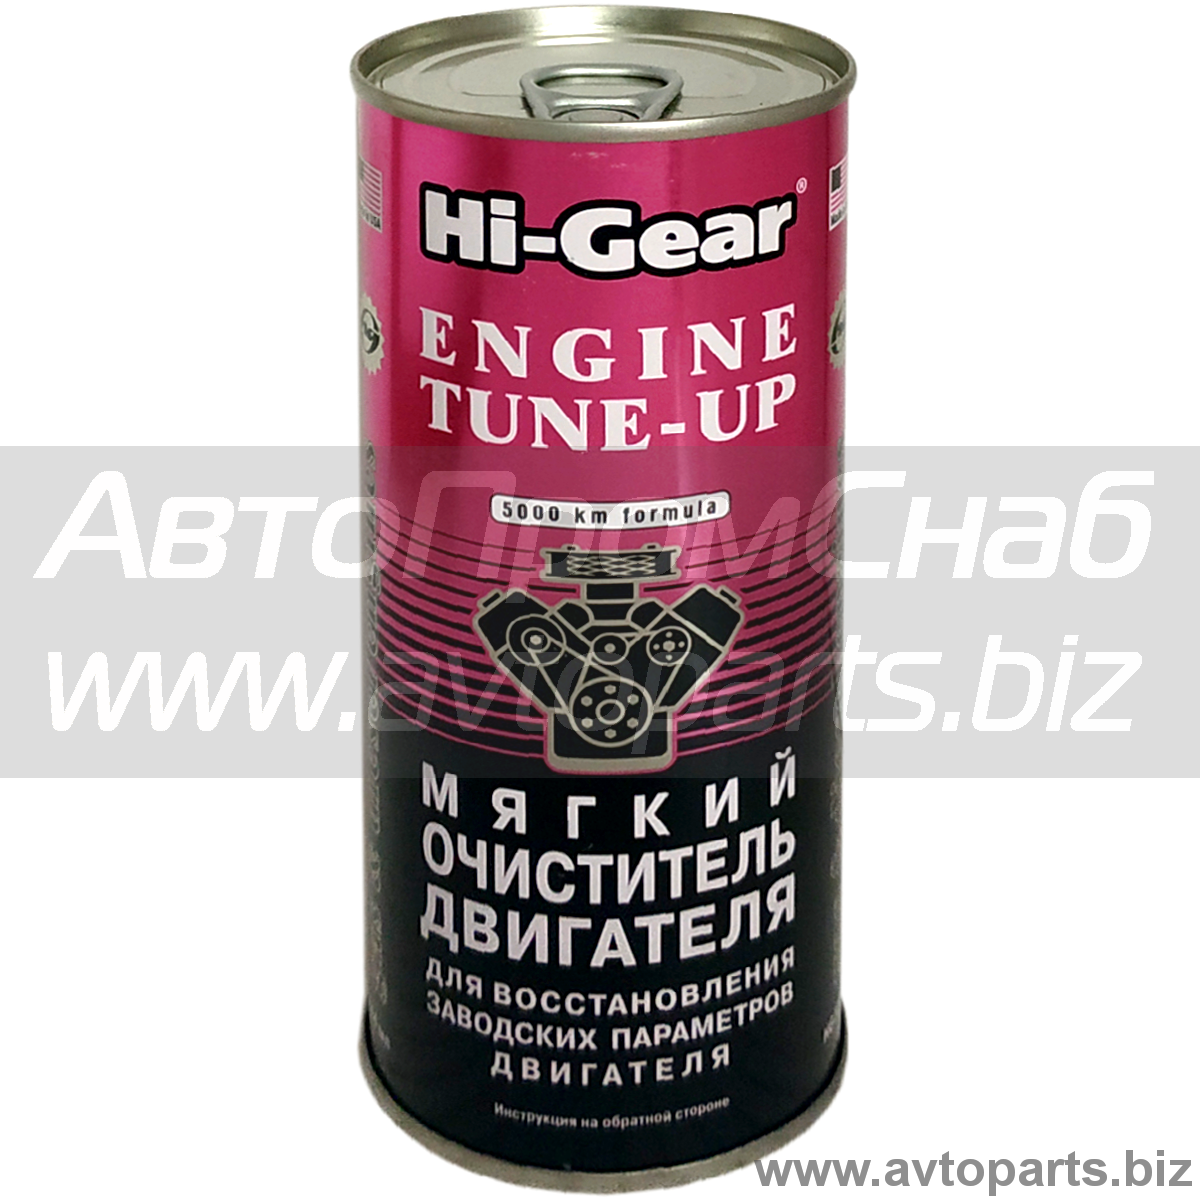 Hi-gear мягкий очиститель двигателя: инструкция, характеристики и отзывы